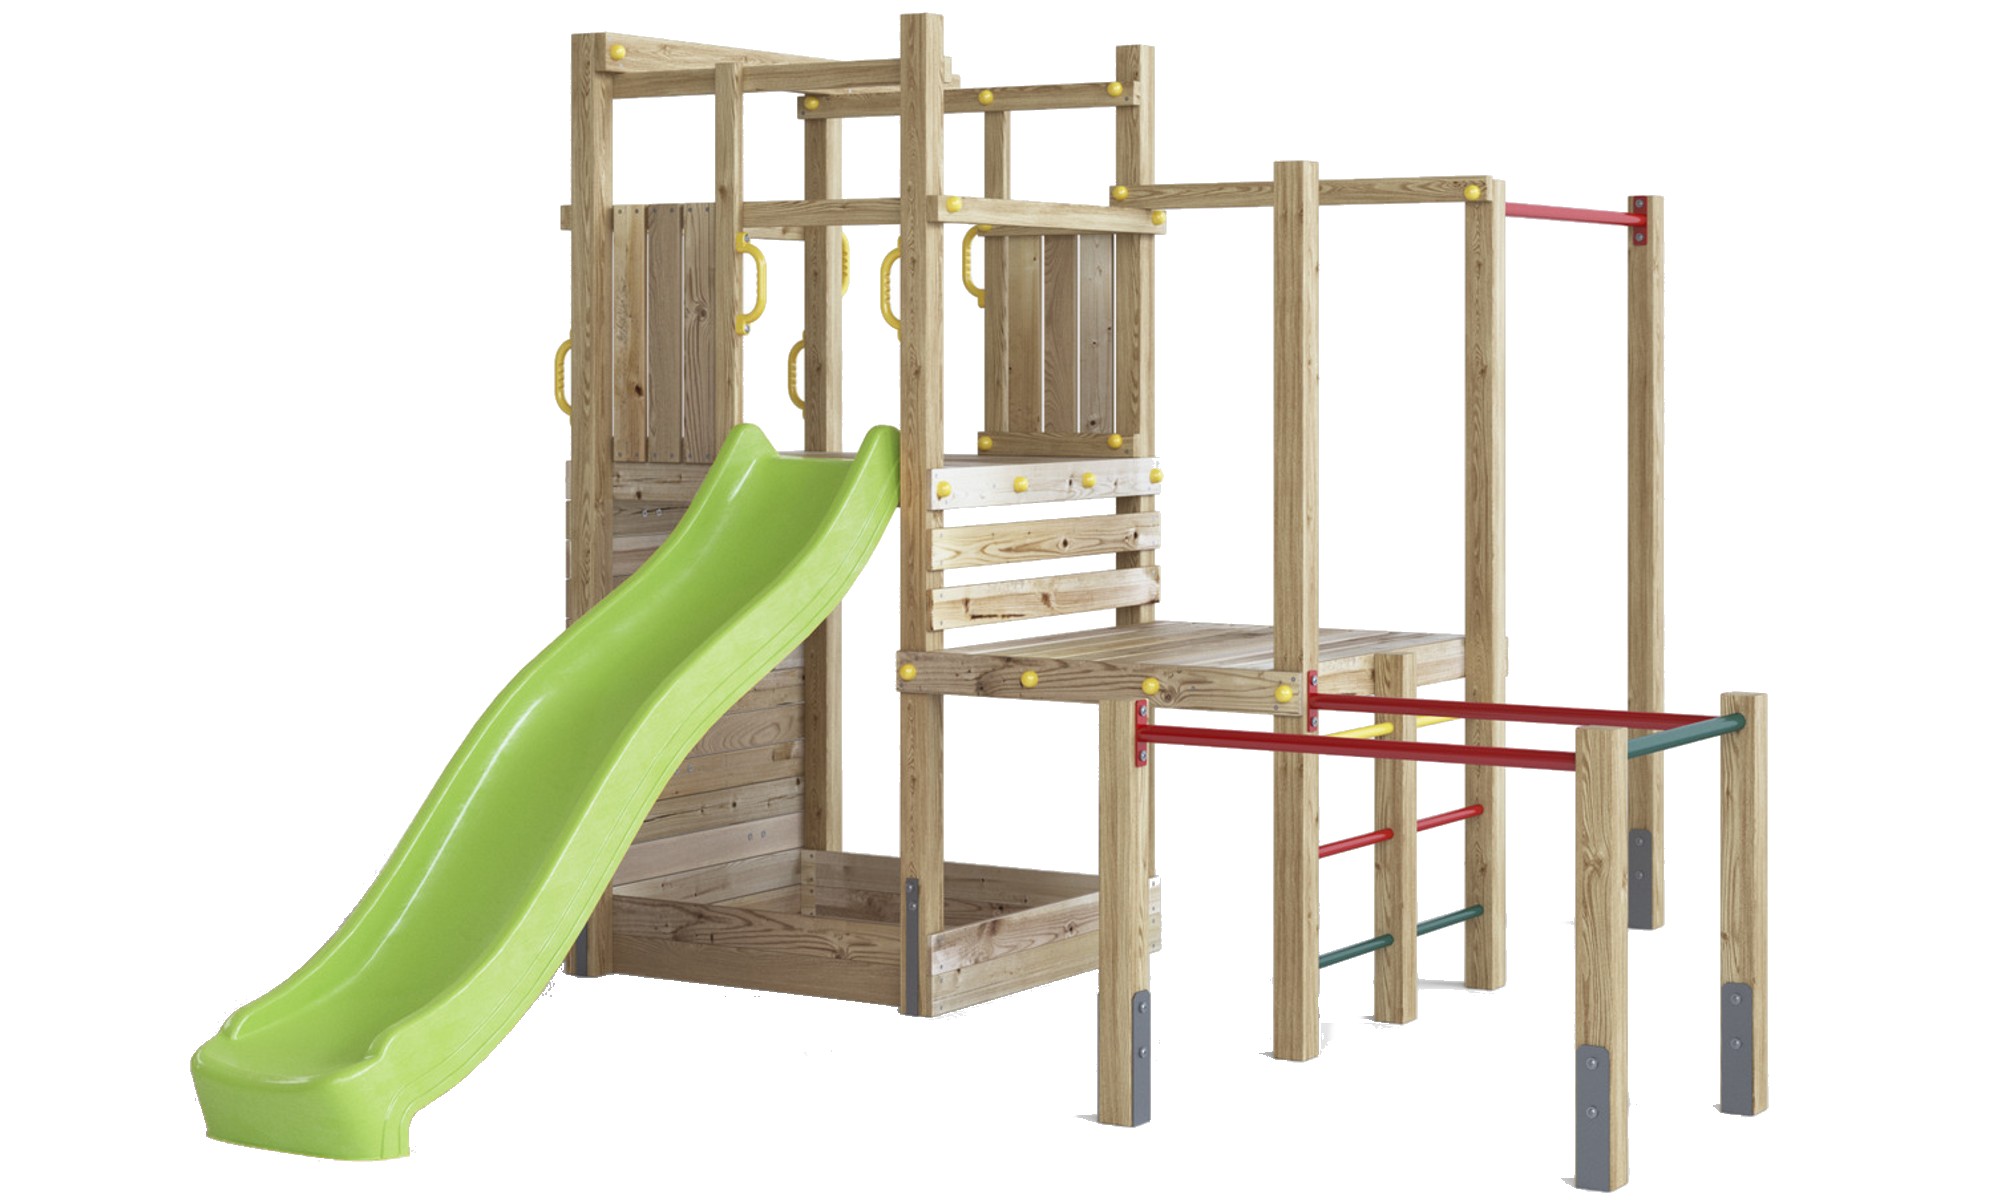 Plac zabaw drewniany ogrodowy Climbing Star 4 KDI zjedalnia, piaskownica, cianka i lina wspinaczkowa, porcze gimnastyczne, drabinki